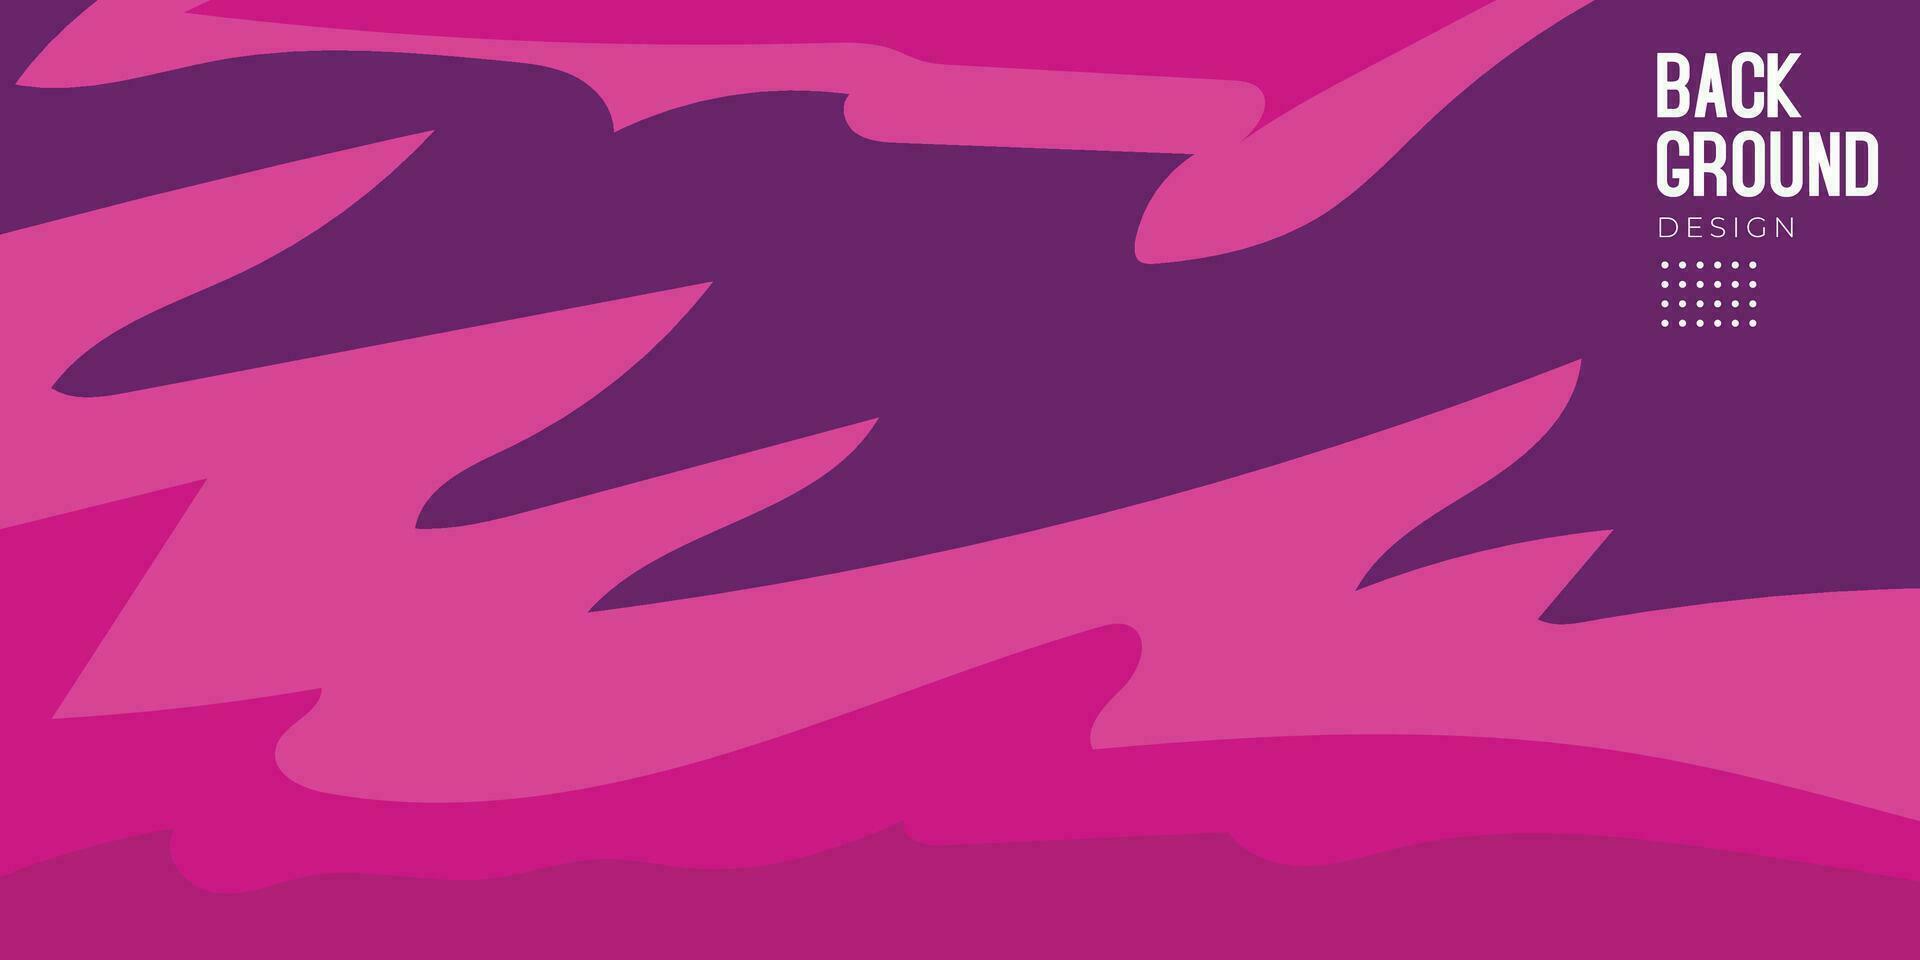 abstrakt geometrisch Hintergrund mit Rosa und lila Farben kombinieren vektor